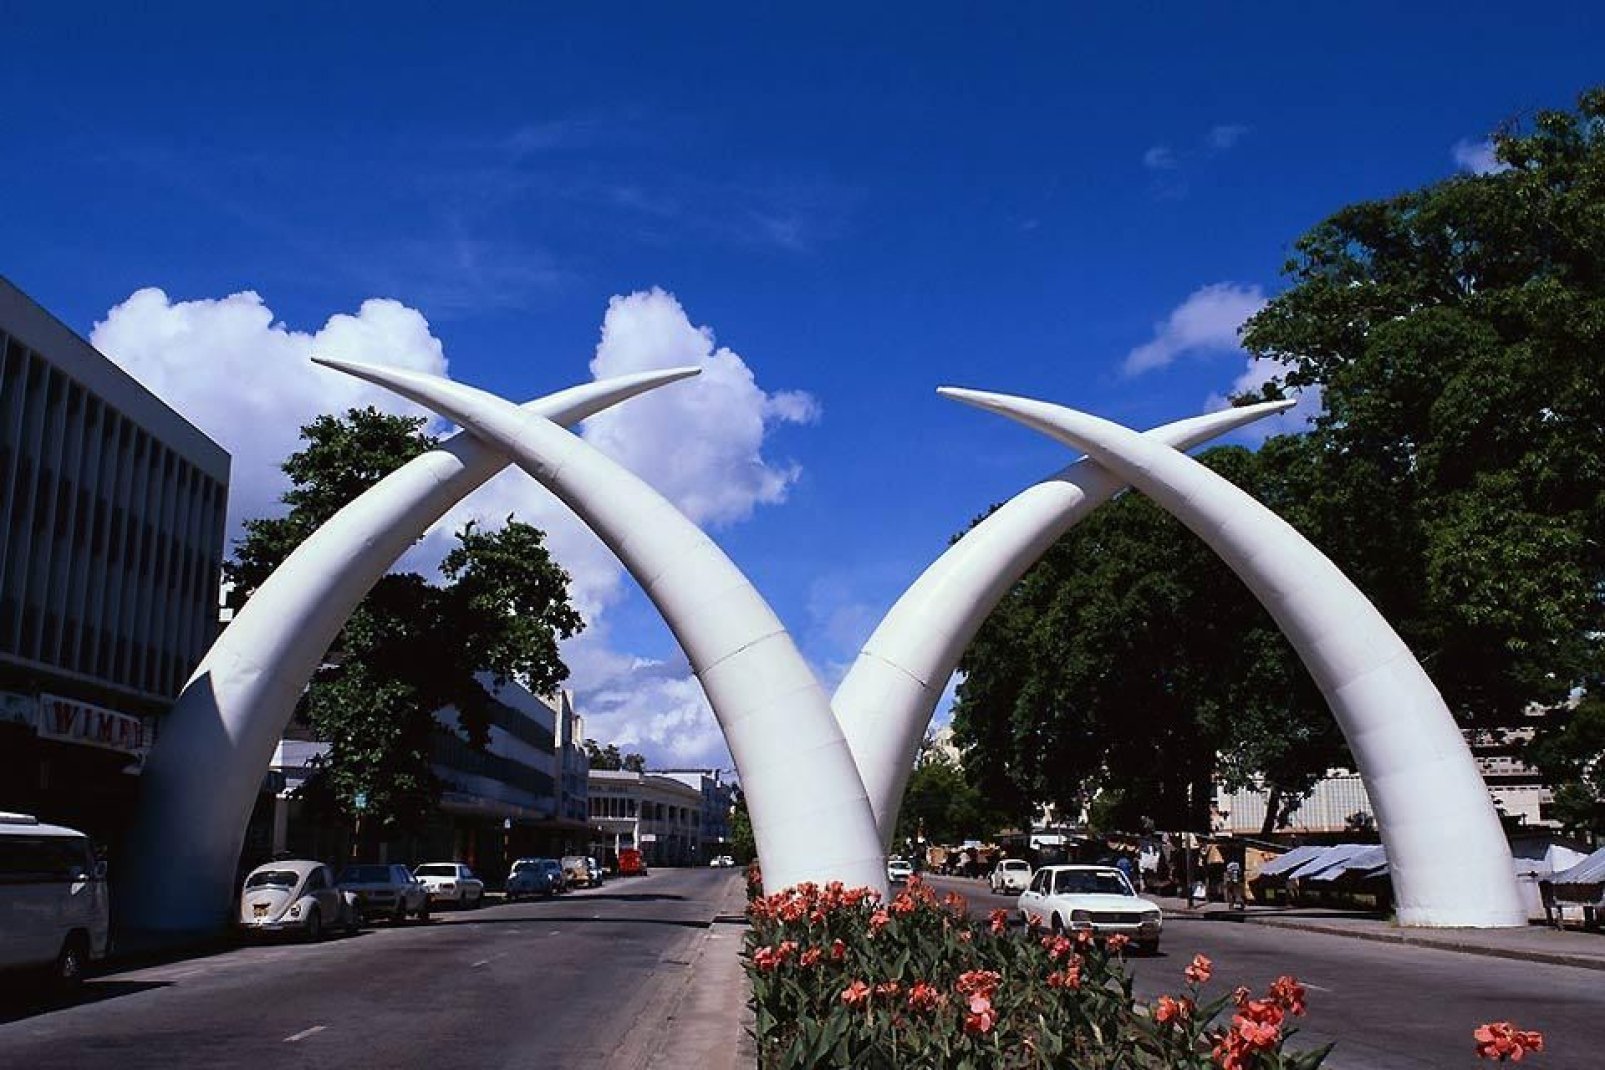 Am Eingang der Stadt kann man riesige Wlle zur Abwehr von Elefanten erkennen.